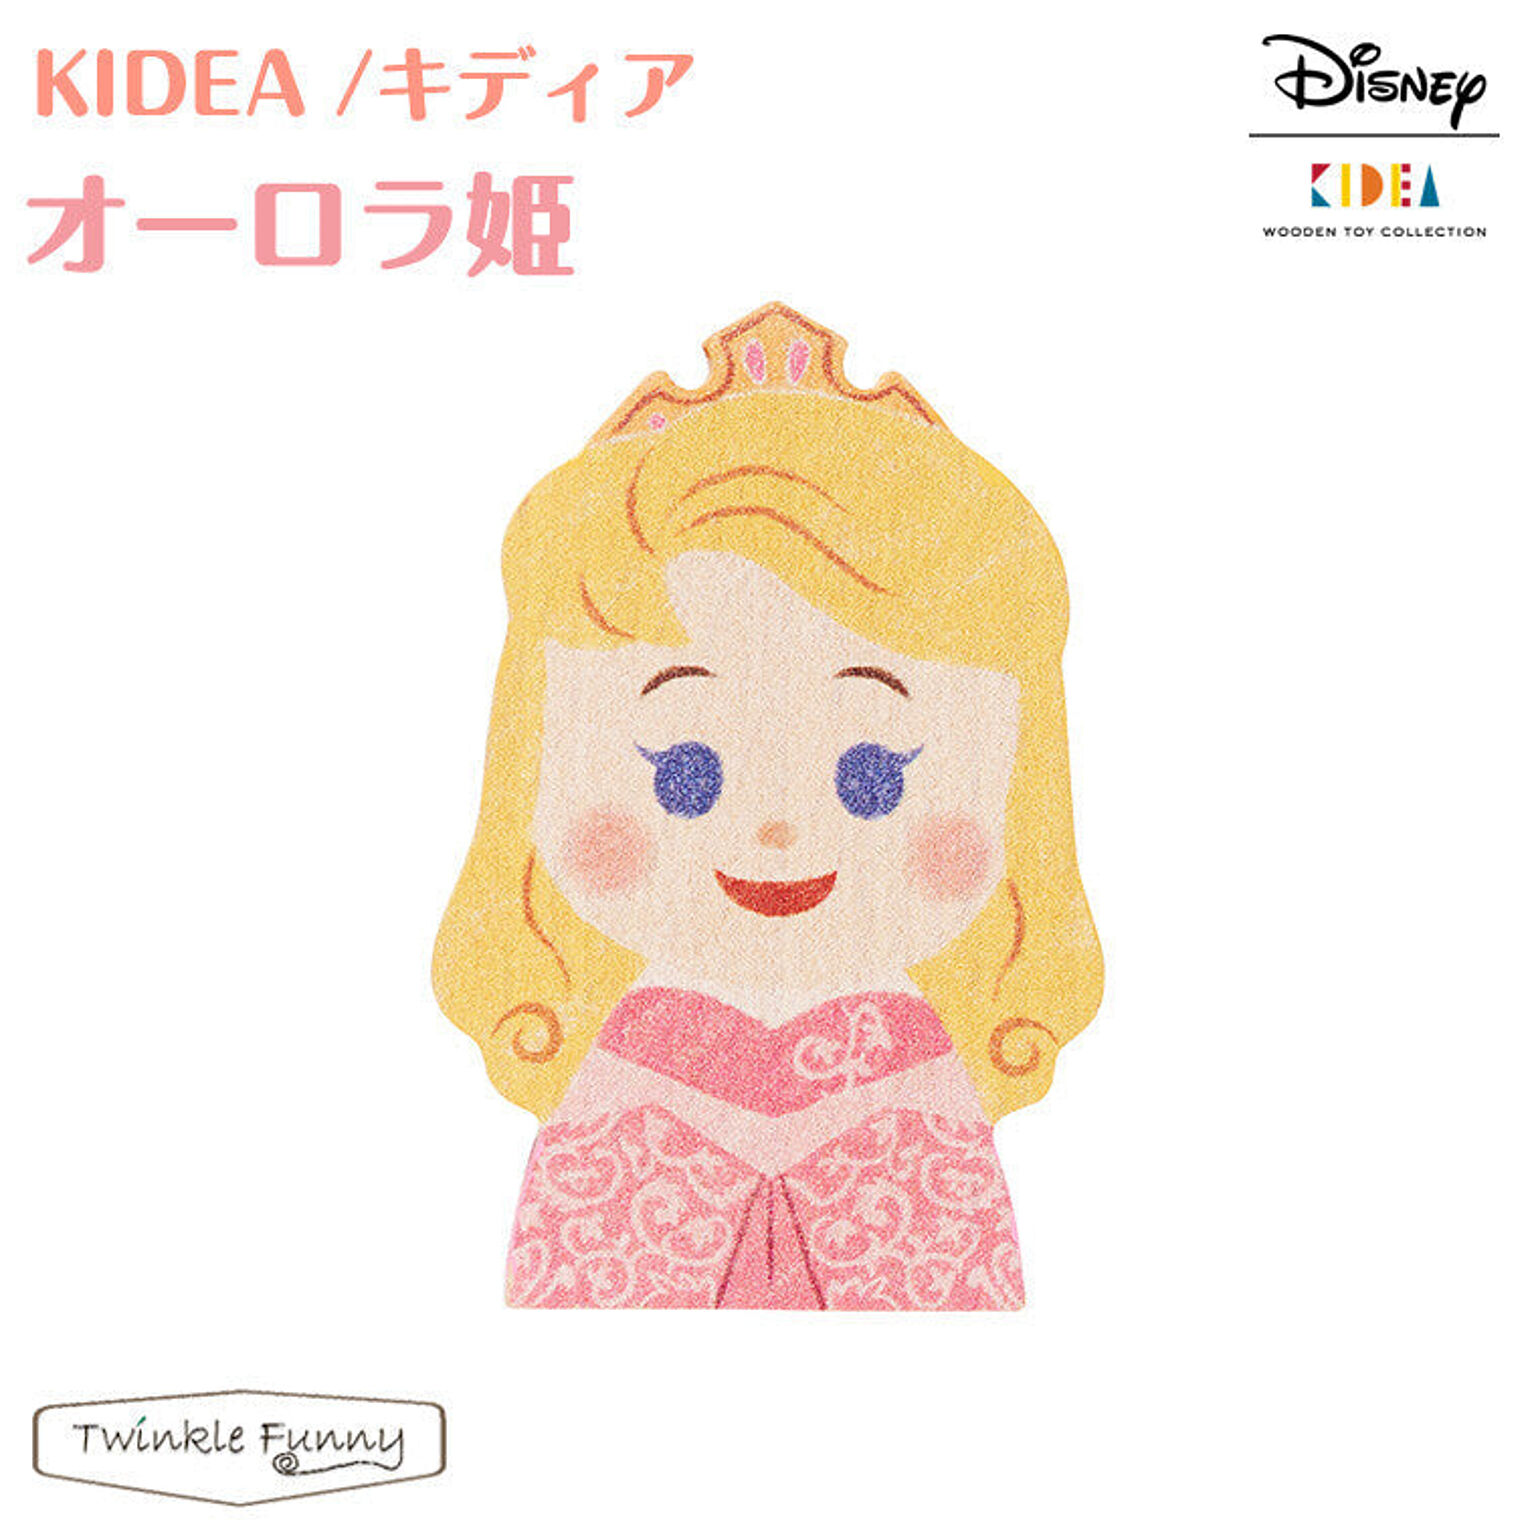 【正規販売店】キディア KIDEA オーロラ姫 Disney ディズニー 眠れる森の美女 TF-31117